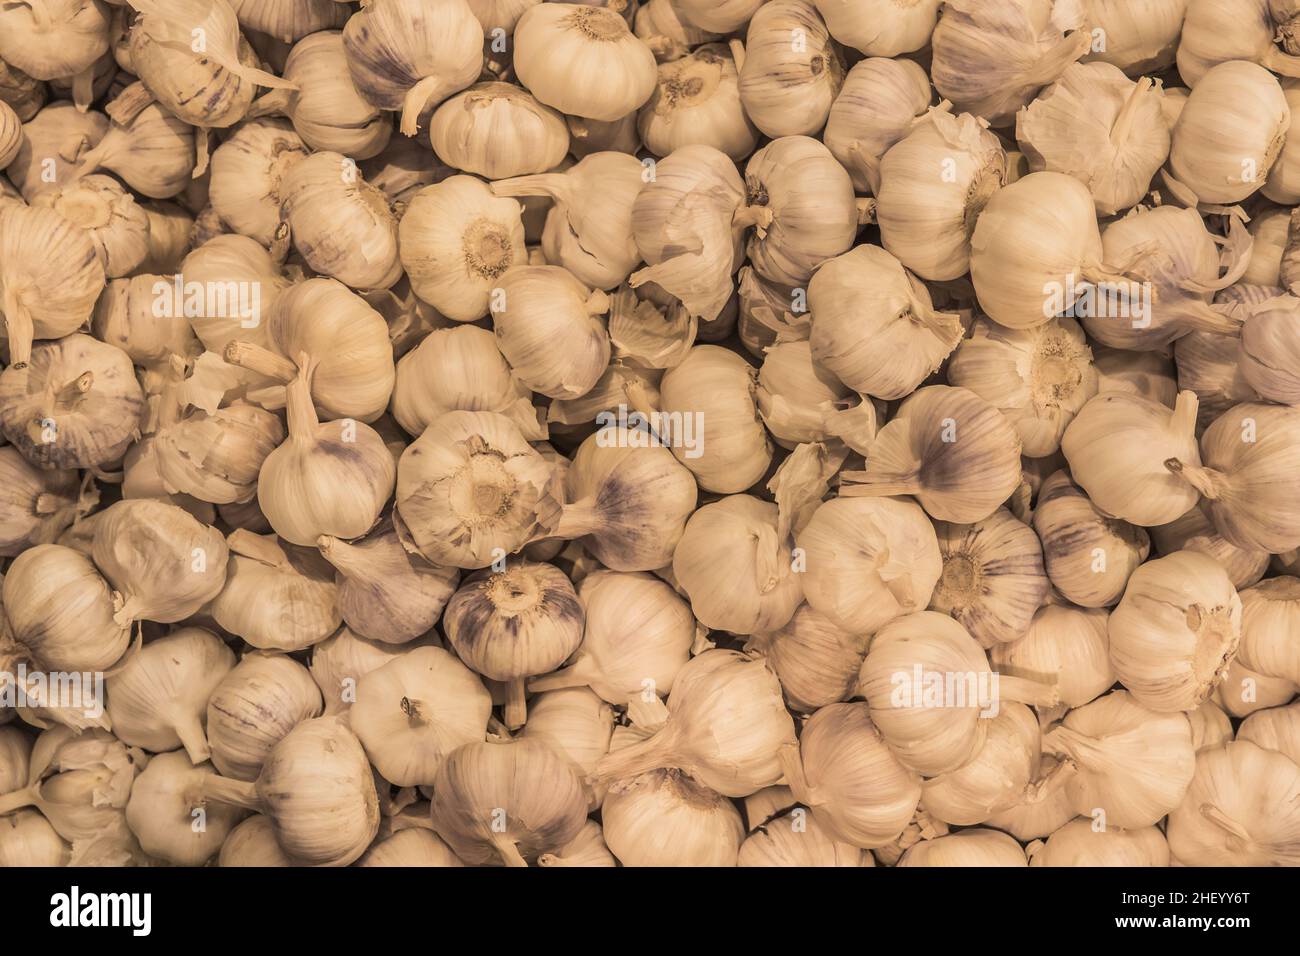 White garlic vegetable raw ingredient food organic background. Stock Photo